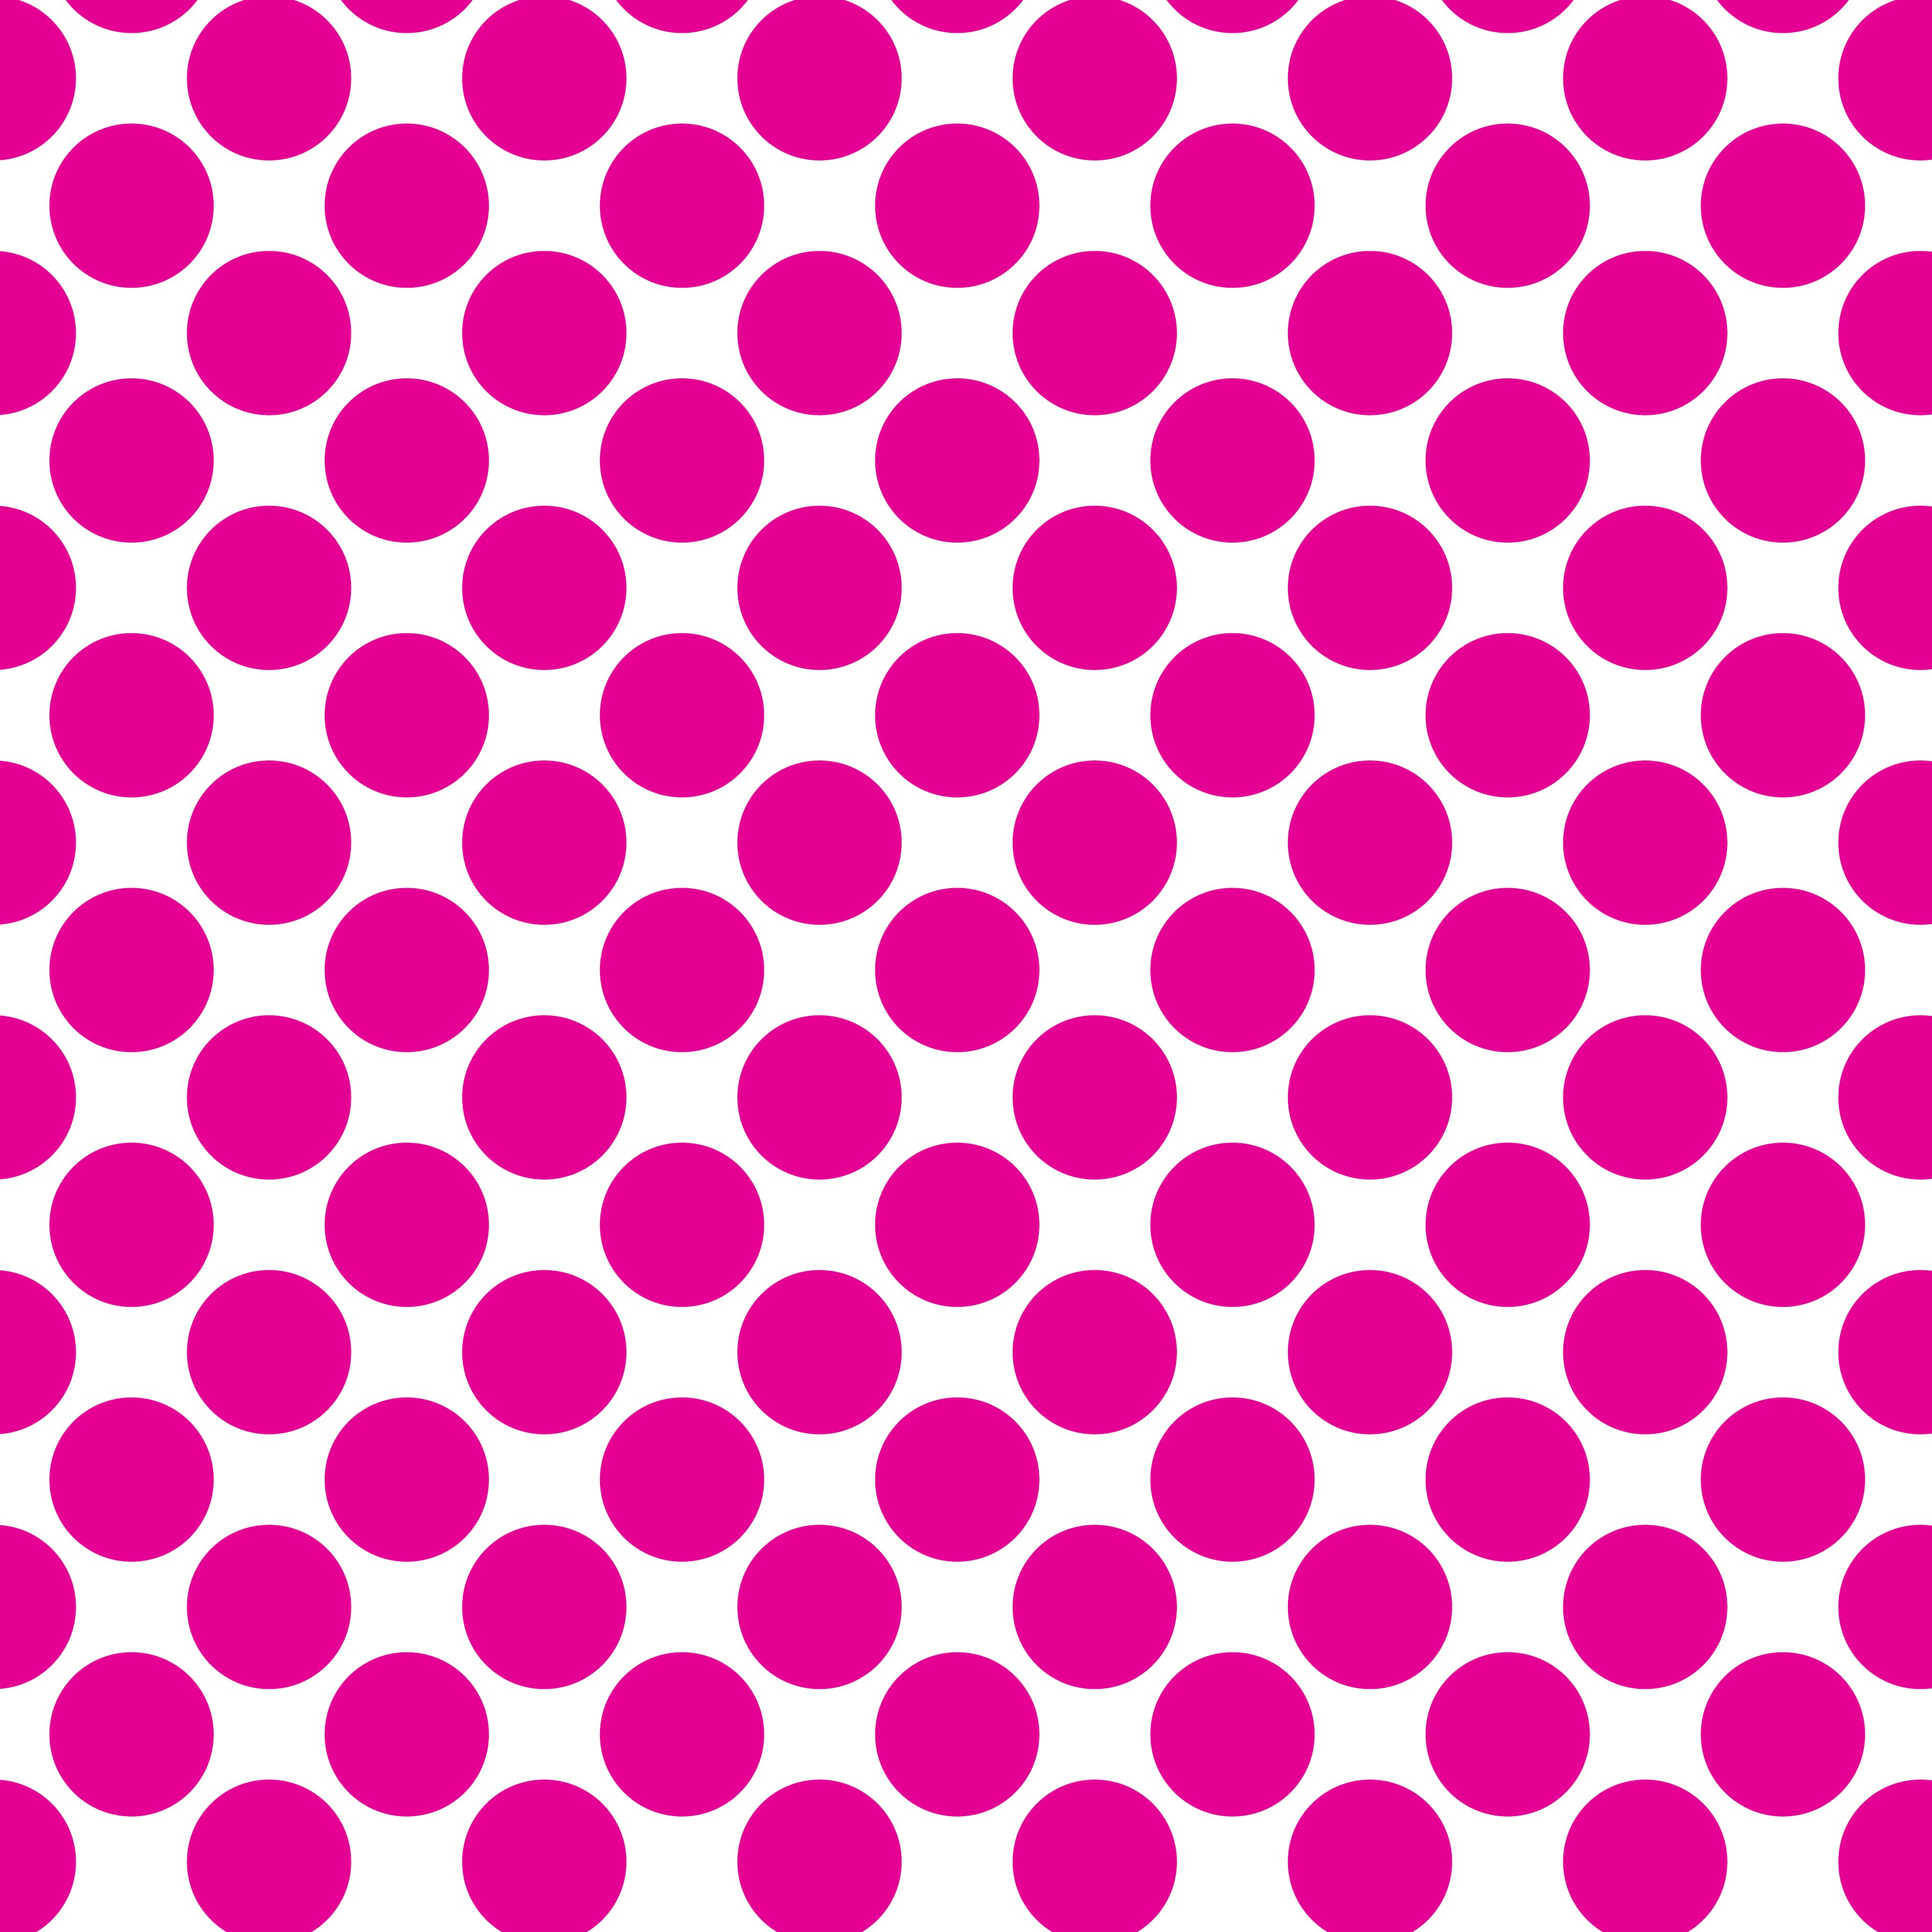 Polka Dot 1 cm Beyaz - Shocking Pembesi Puantiye Dekoratif Baskı Kumaş